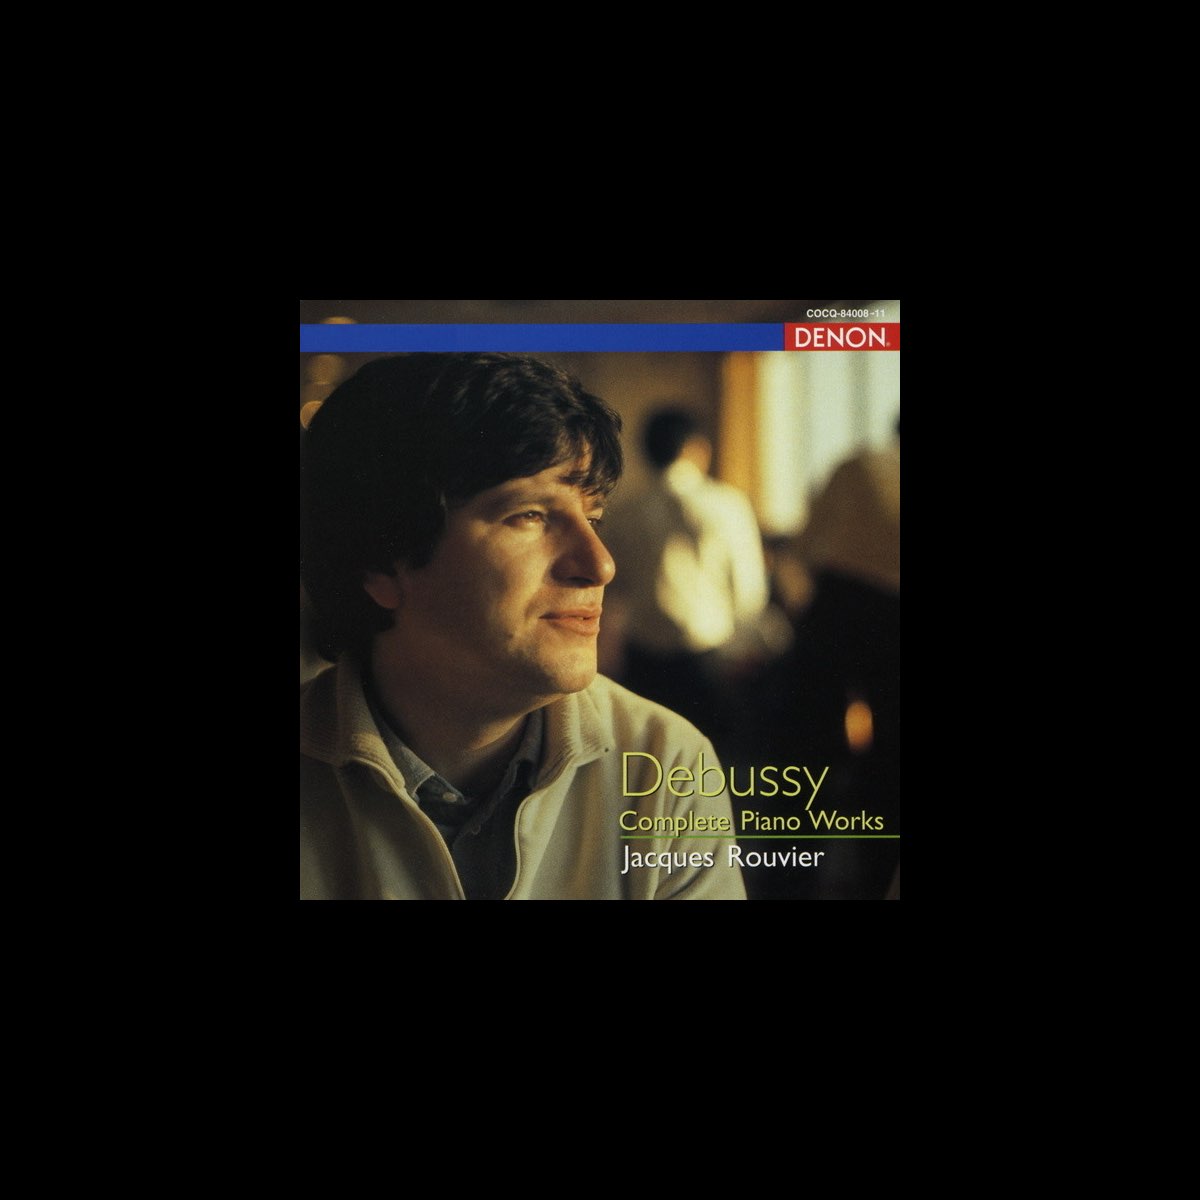 ドビュッシー:ピアノ作品全集 - ジャック・ルヴィエのアルバム - Apple